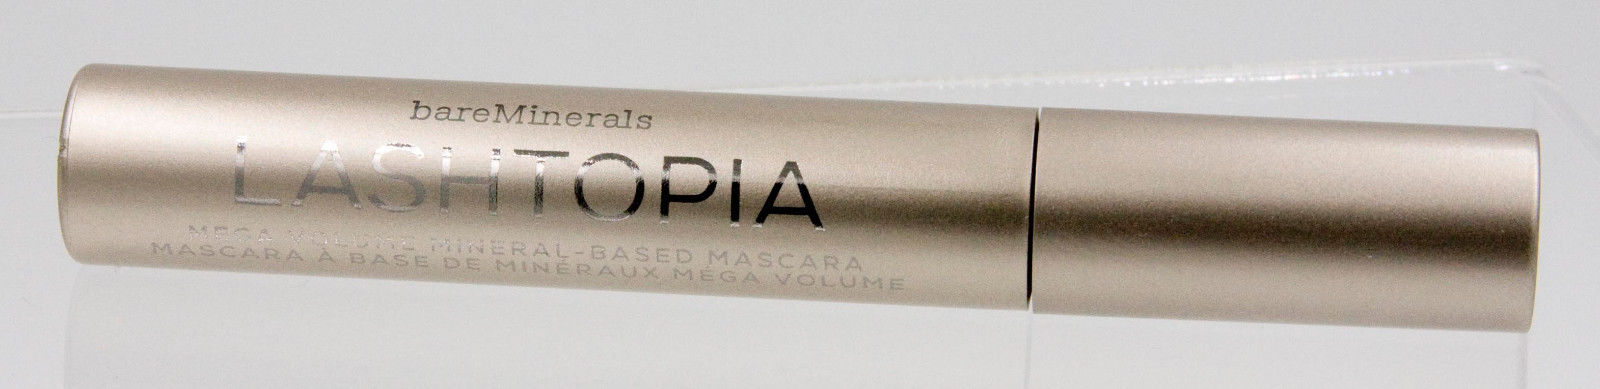 BareMinerals Lashtopia Mega Volume Mineral-Based Mascara Full Size 0.40 oz 12 ml